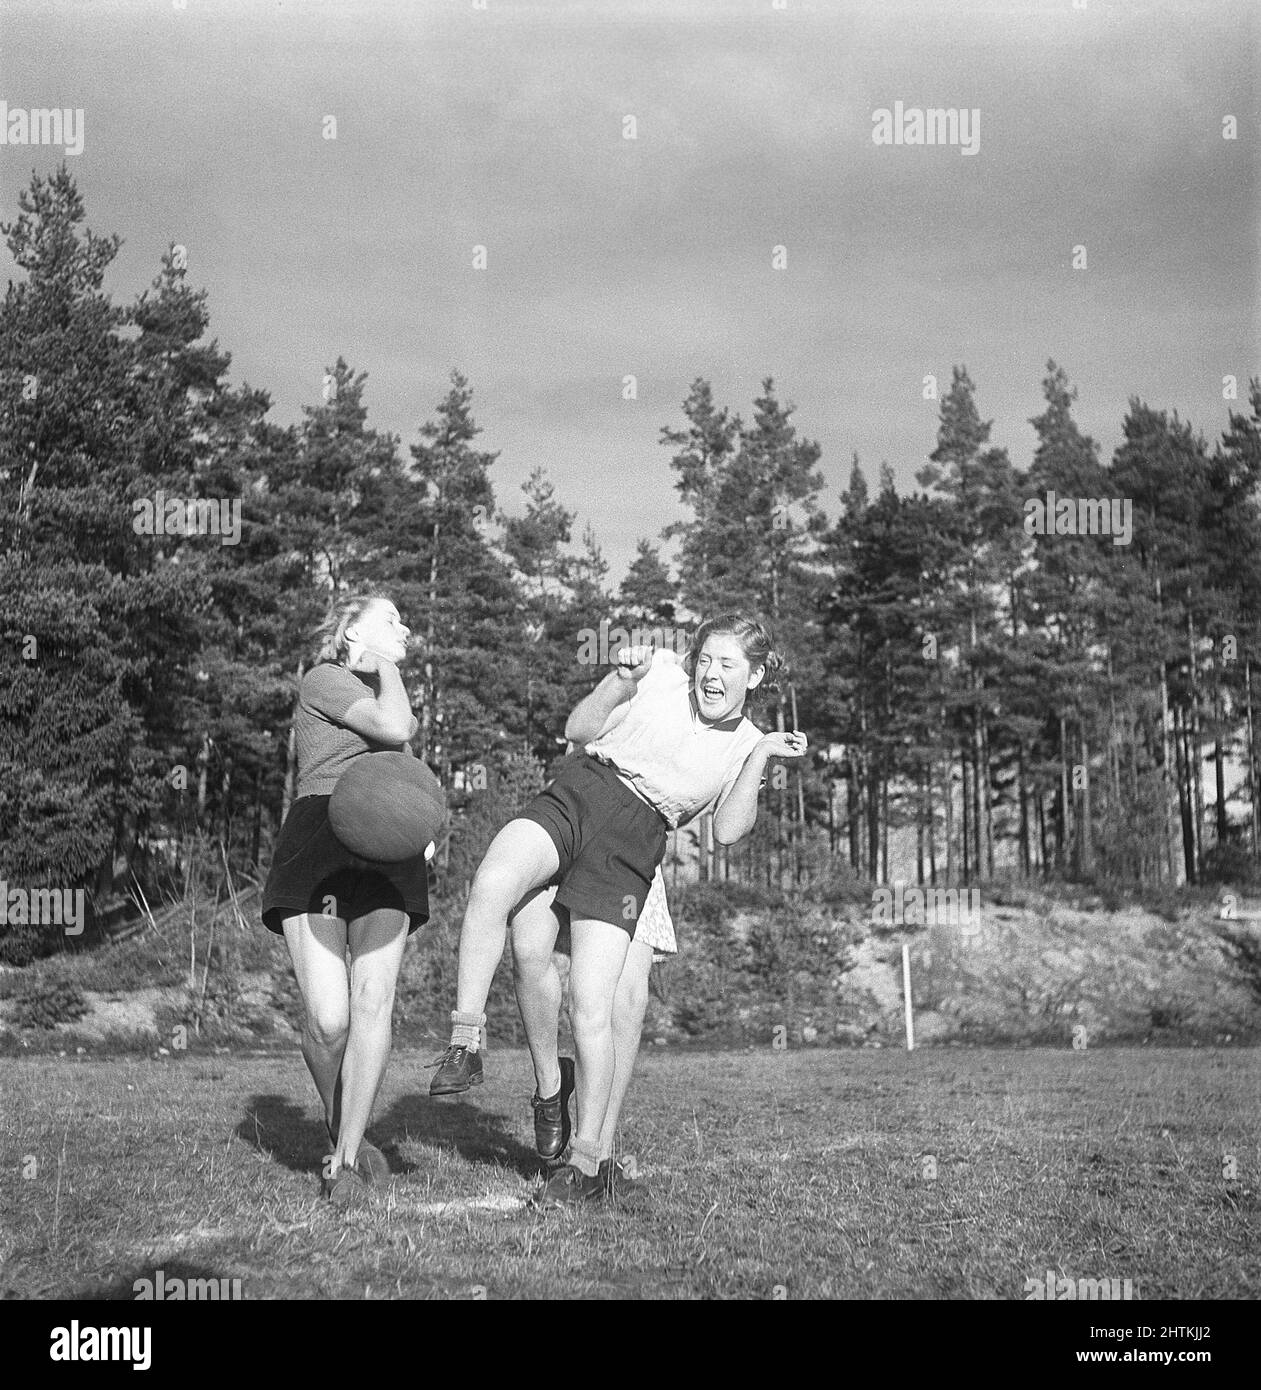 In der 1950s. Eine Frauenfußballmannschaft während des Trainings. Drei Spieler kämpfen um den Ball. Schweden 1951 Kristoffersson BE37-1 Stockfoto